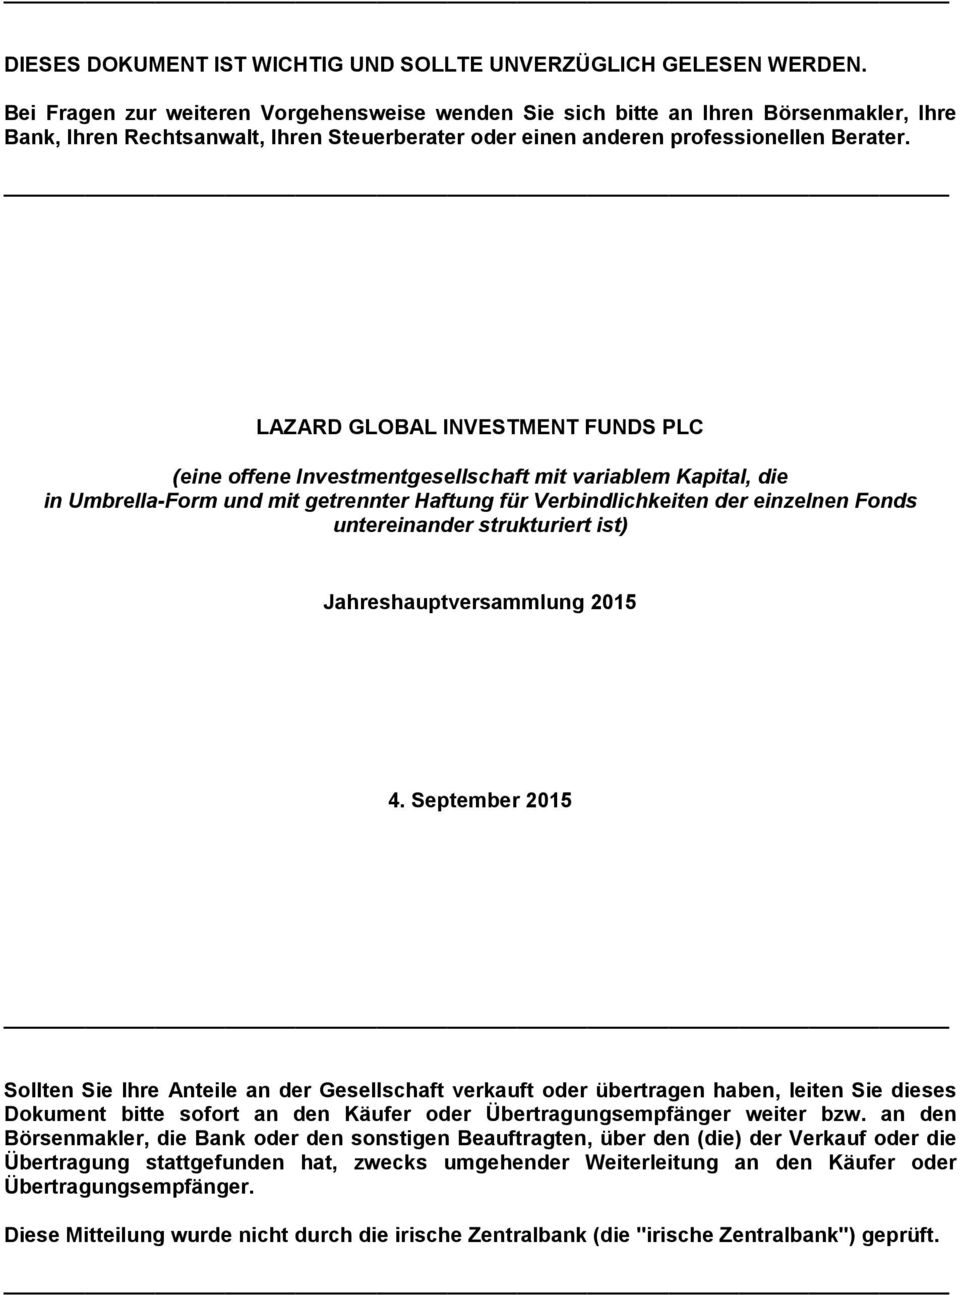 LAZARD GLOBAL INVESTMENT FUNDS PLC (eine offene Investmentgesellschaft mit variablem Kapital, die in Umbrella-Form und mit getrennter Haftung für Verbindlichkeiten der einzelnen Fonds untereinander